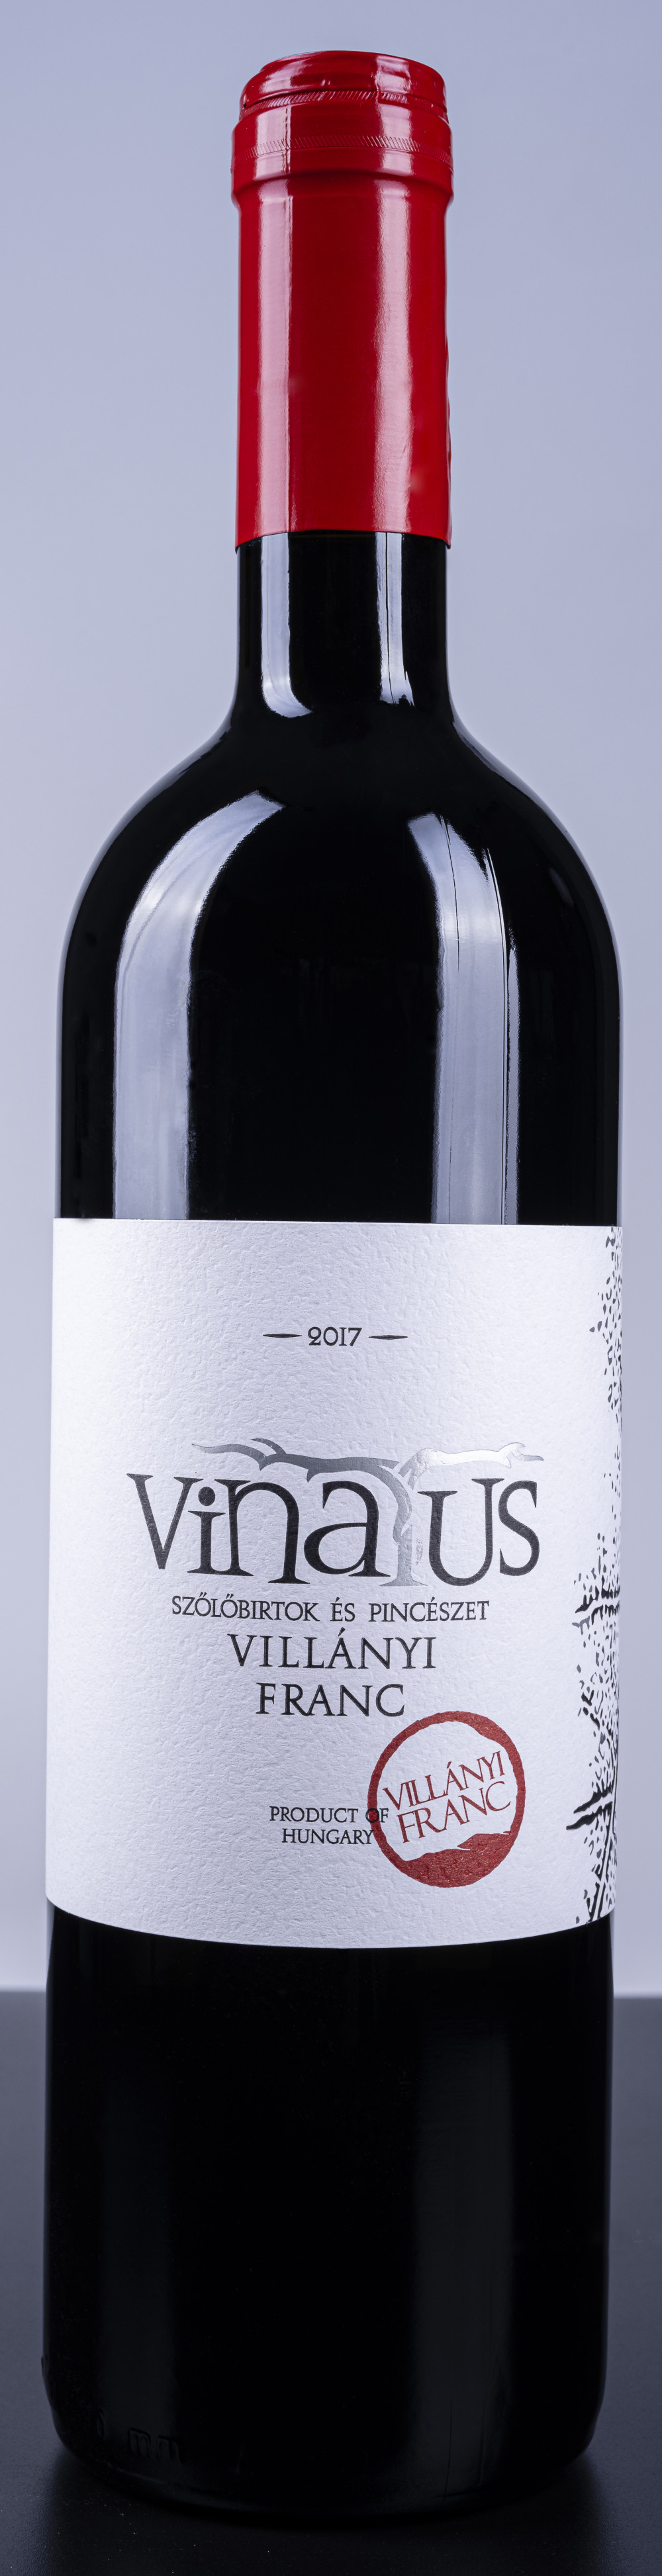 Vinatus Villányi Franc 2017 0,75l